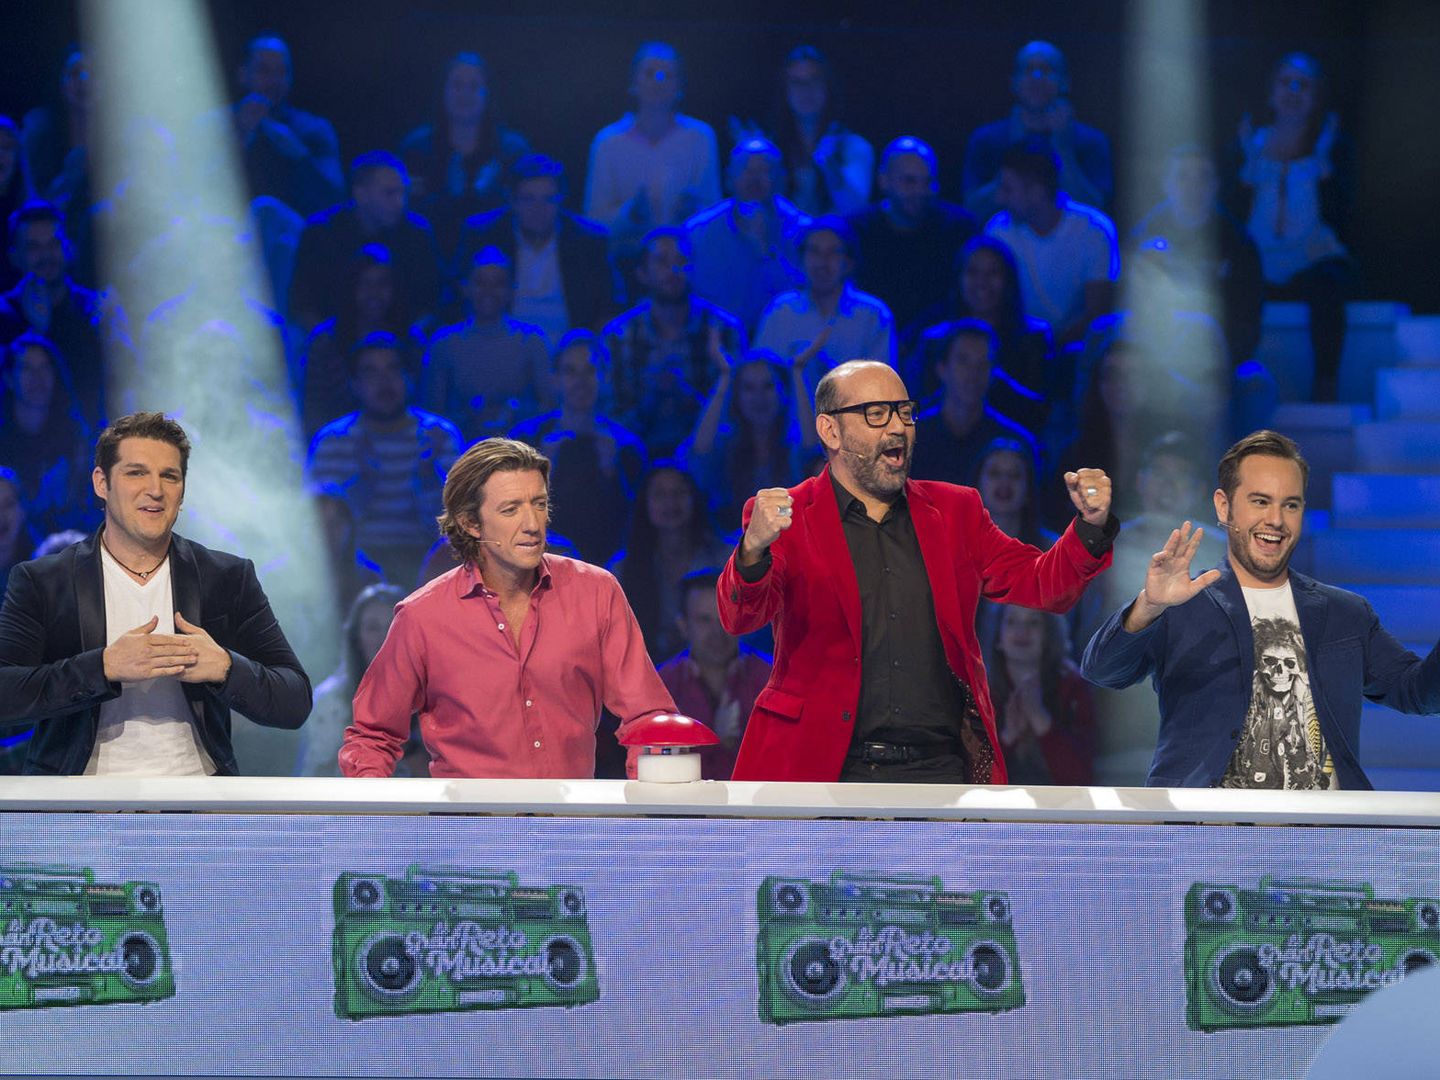 Manu Tenorio, Colate, José Corbacho y Jorge Blass, el equipo masculino de 'El gran reto musical' (RTVE)